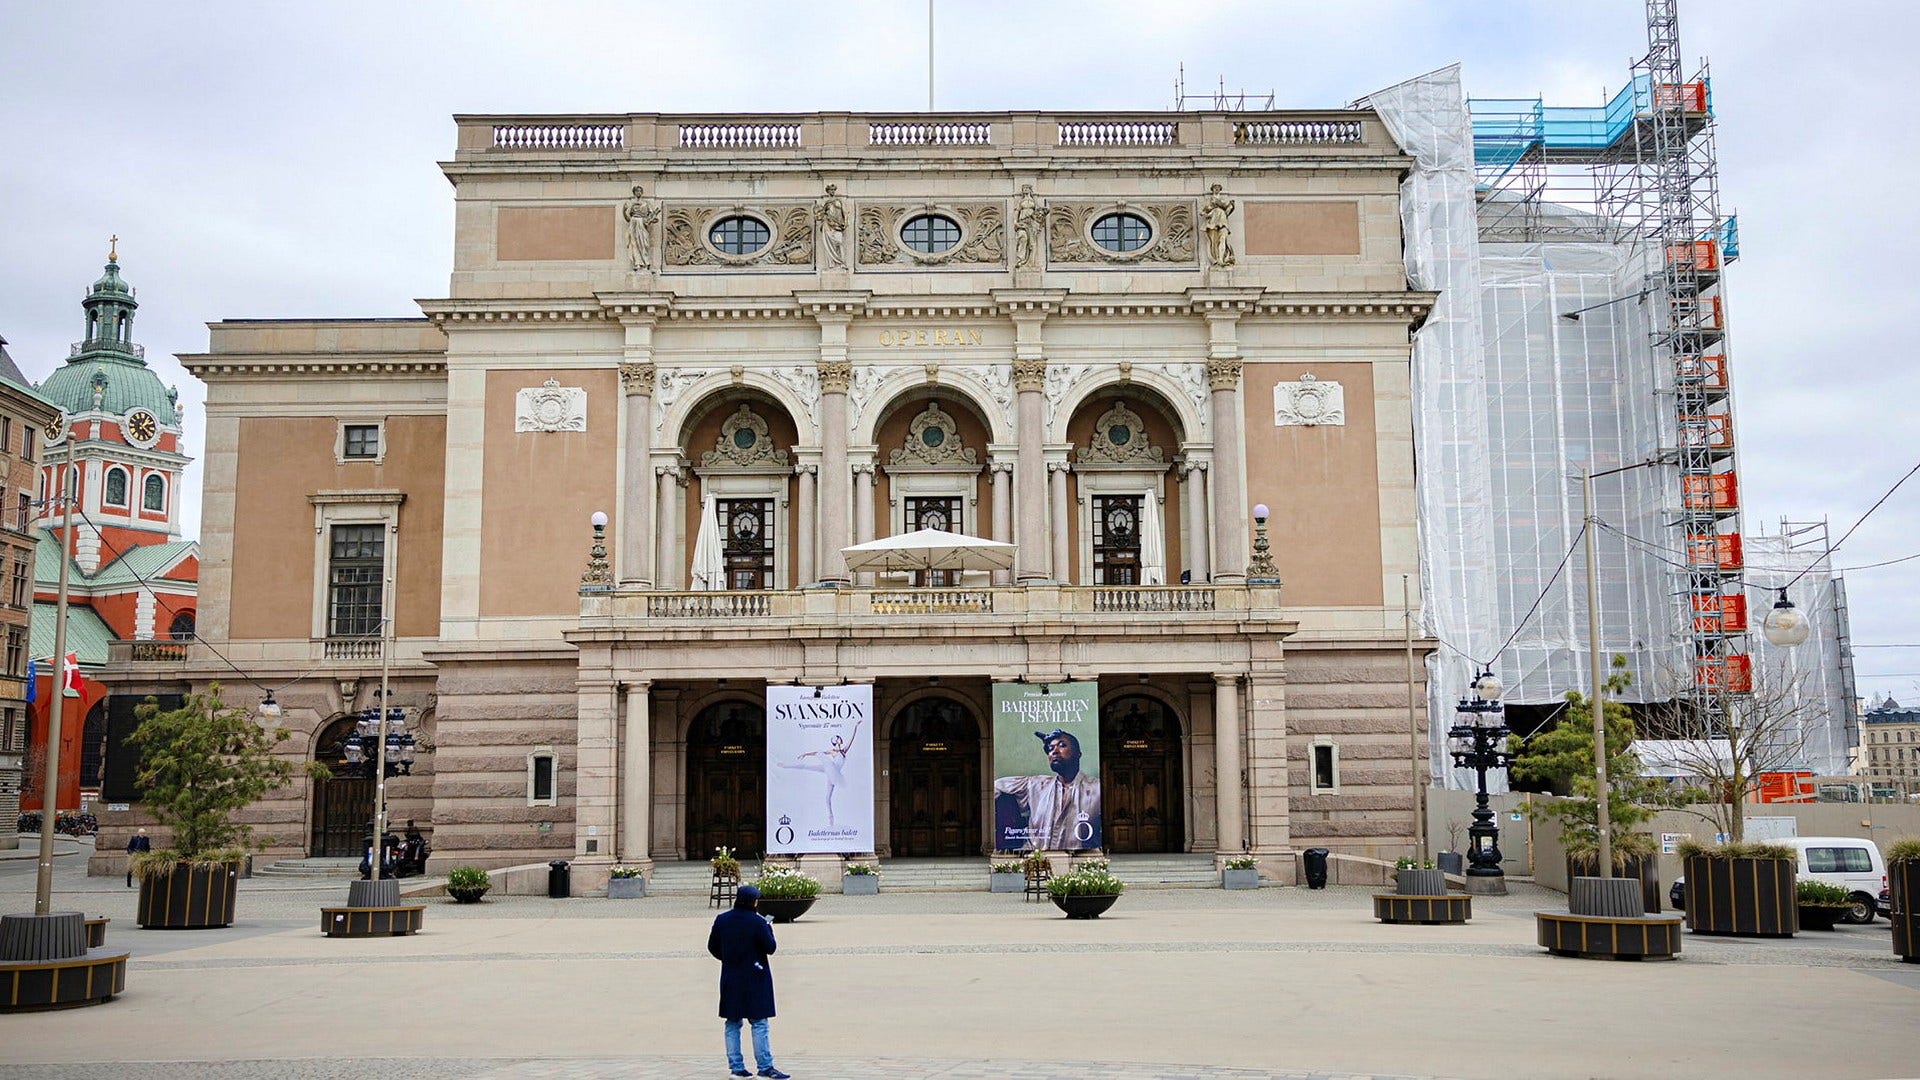 Kungliga Operan ska enligt planerna stänga för renovering den 1 juli 2026 och hålla stängt i fem år. Men insändarskribenten har en ny idé jämfört med vad som hittills har presenterats.